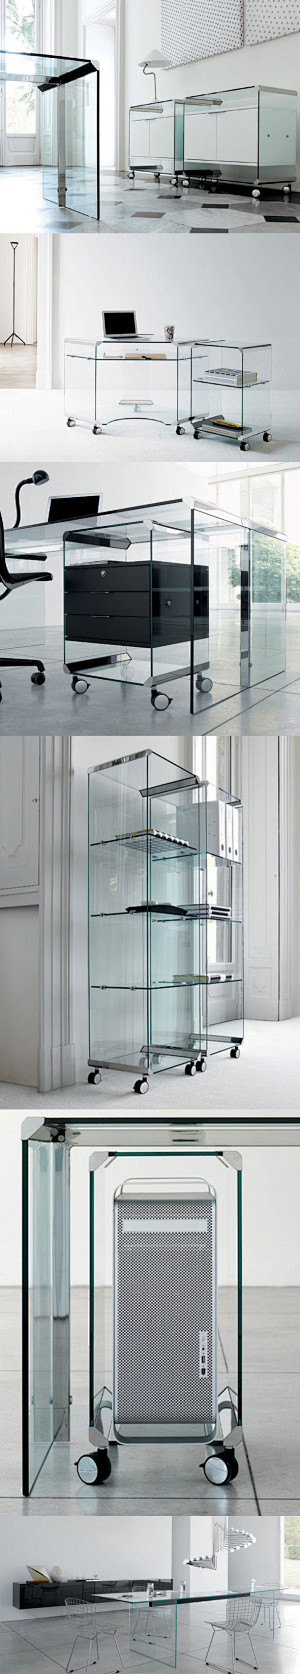 G&R玻璃家具设计